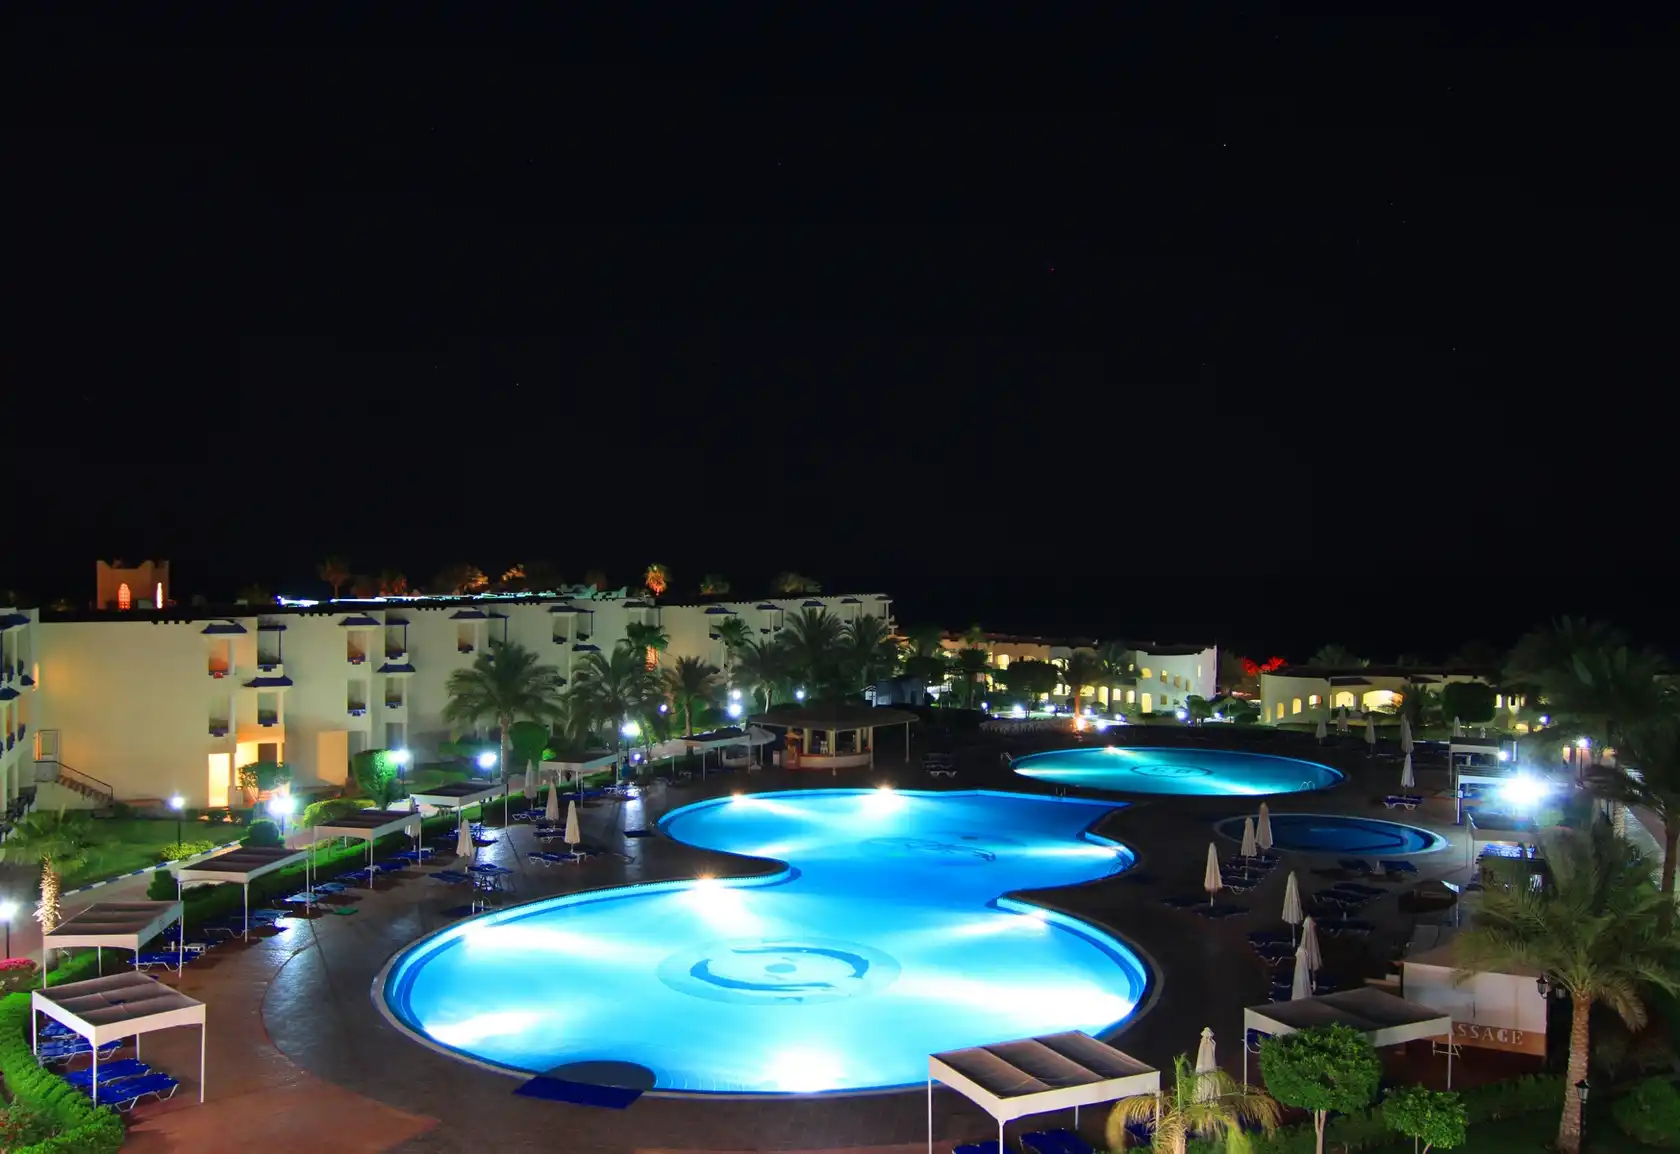 افضل شركة حجز فندق جراند اويزيس ريزورت شرم الشيخ - افضل فنادق شرم الشيخ 4 نجوم | Grand Oasis Resort